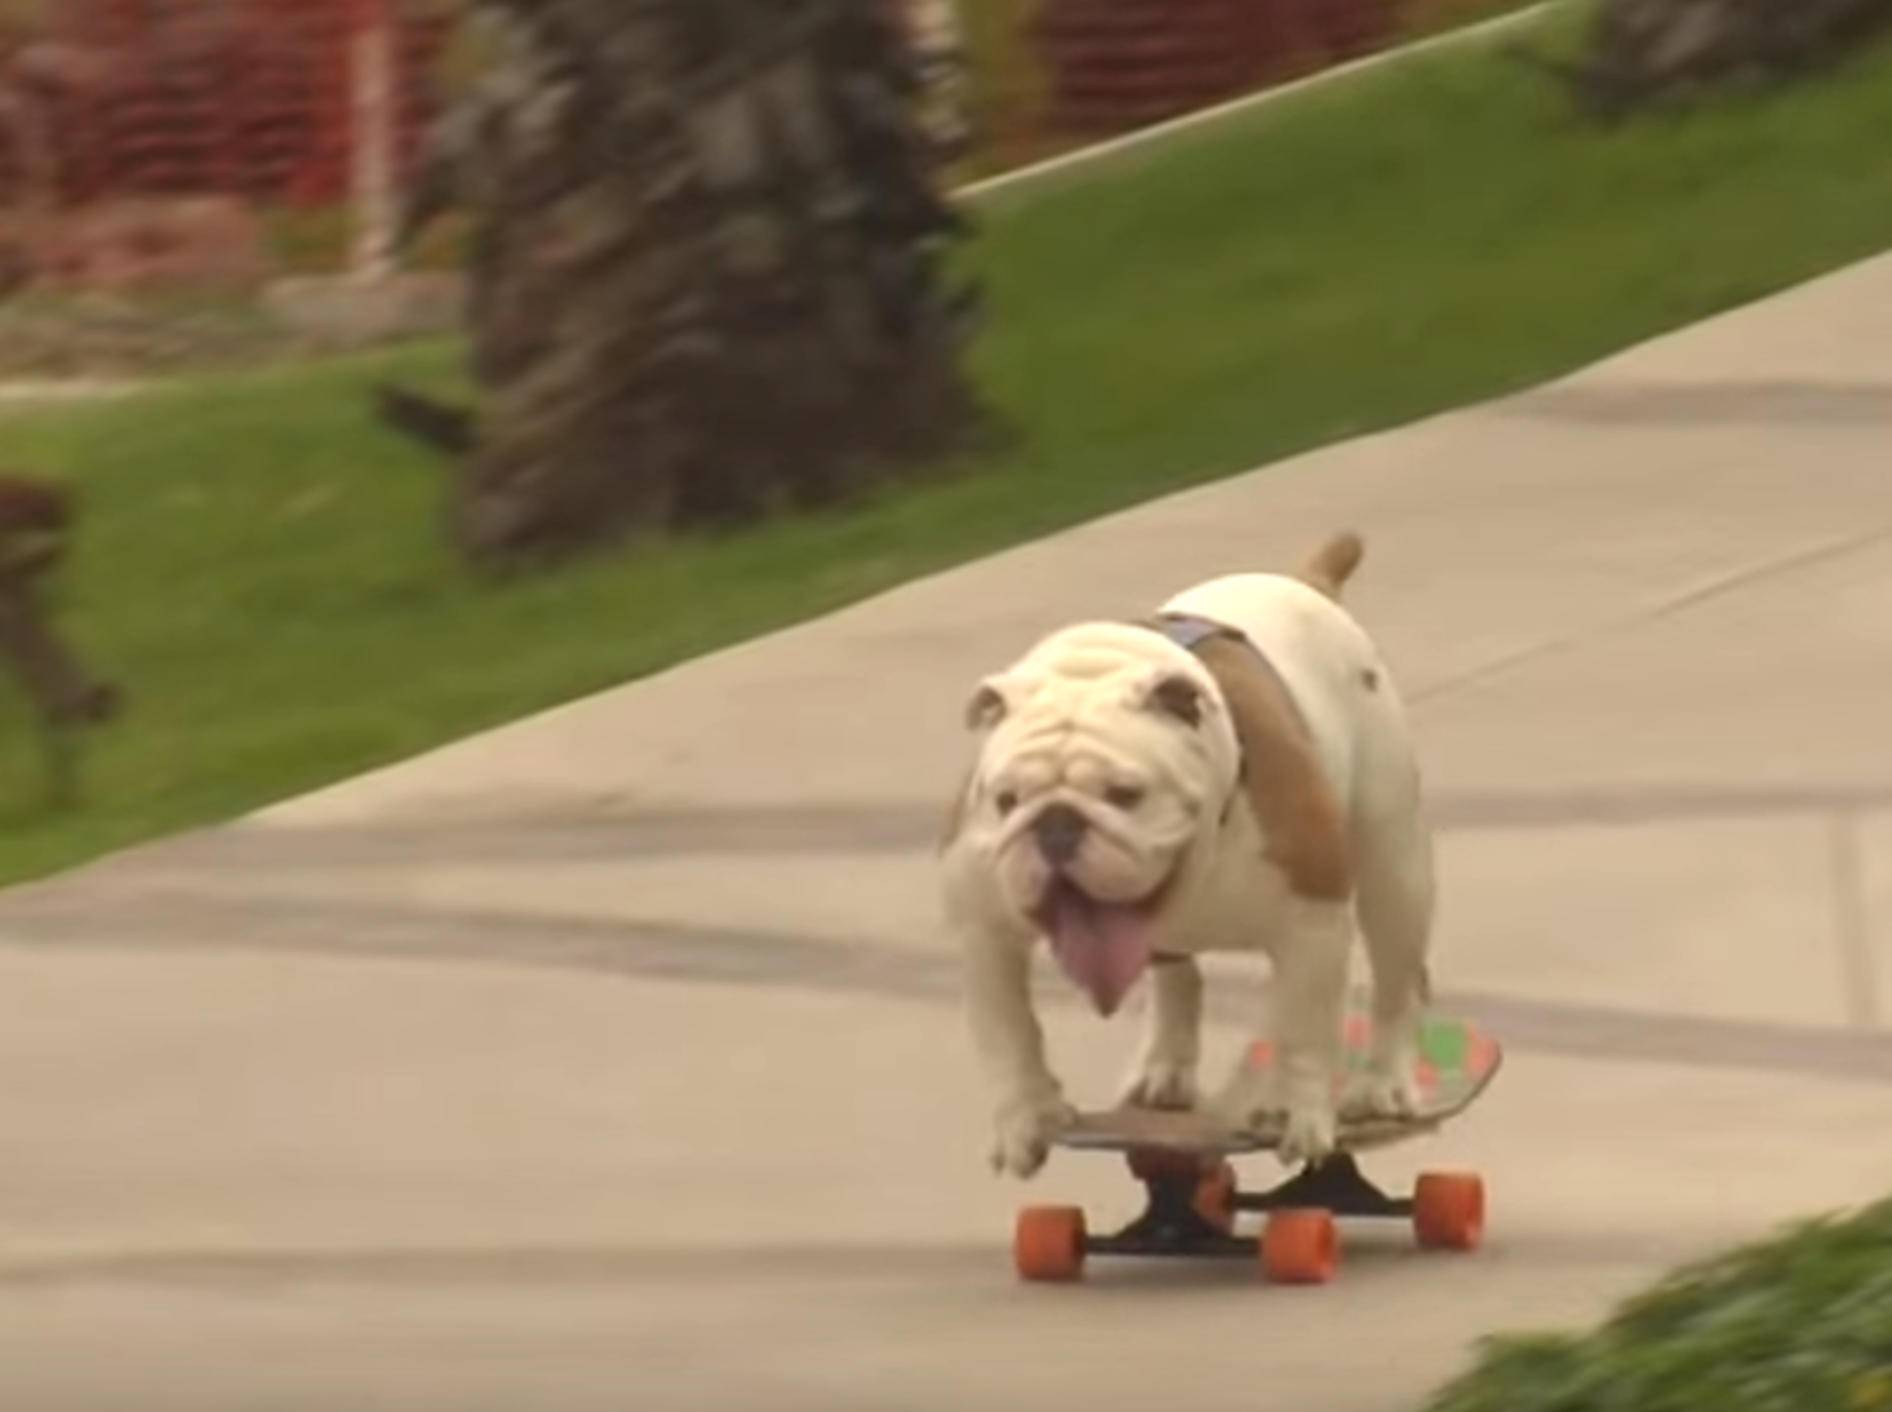 Bulldogge Weltrekord Hunde-Skateboard-Fahren